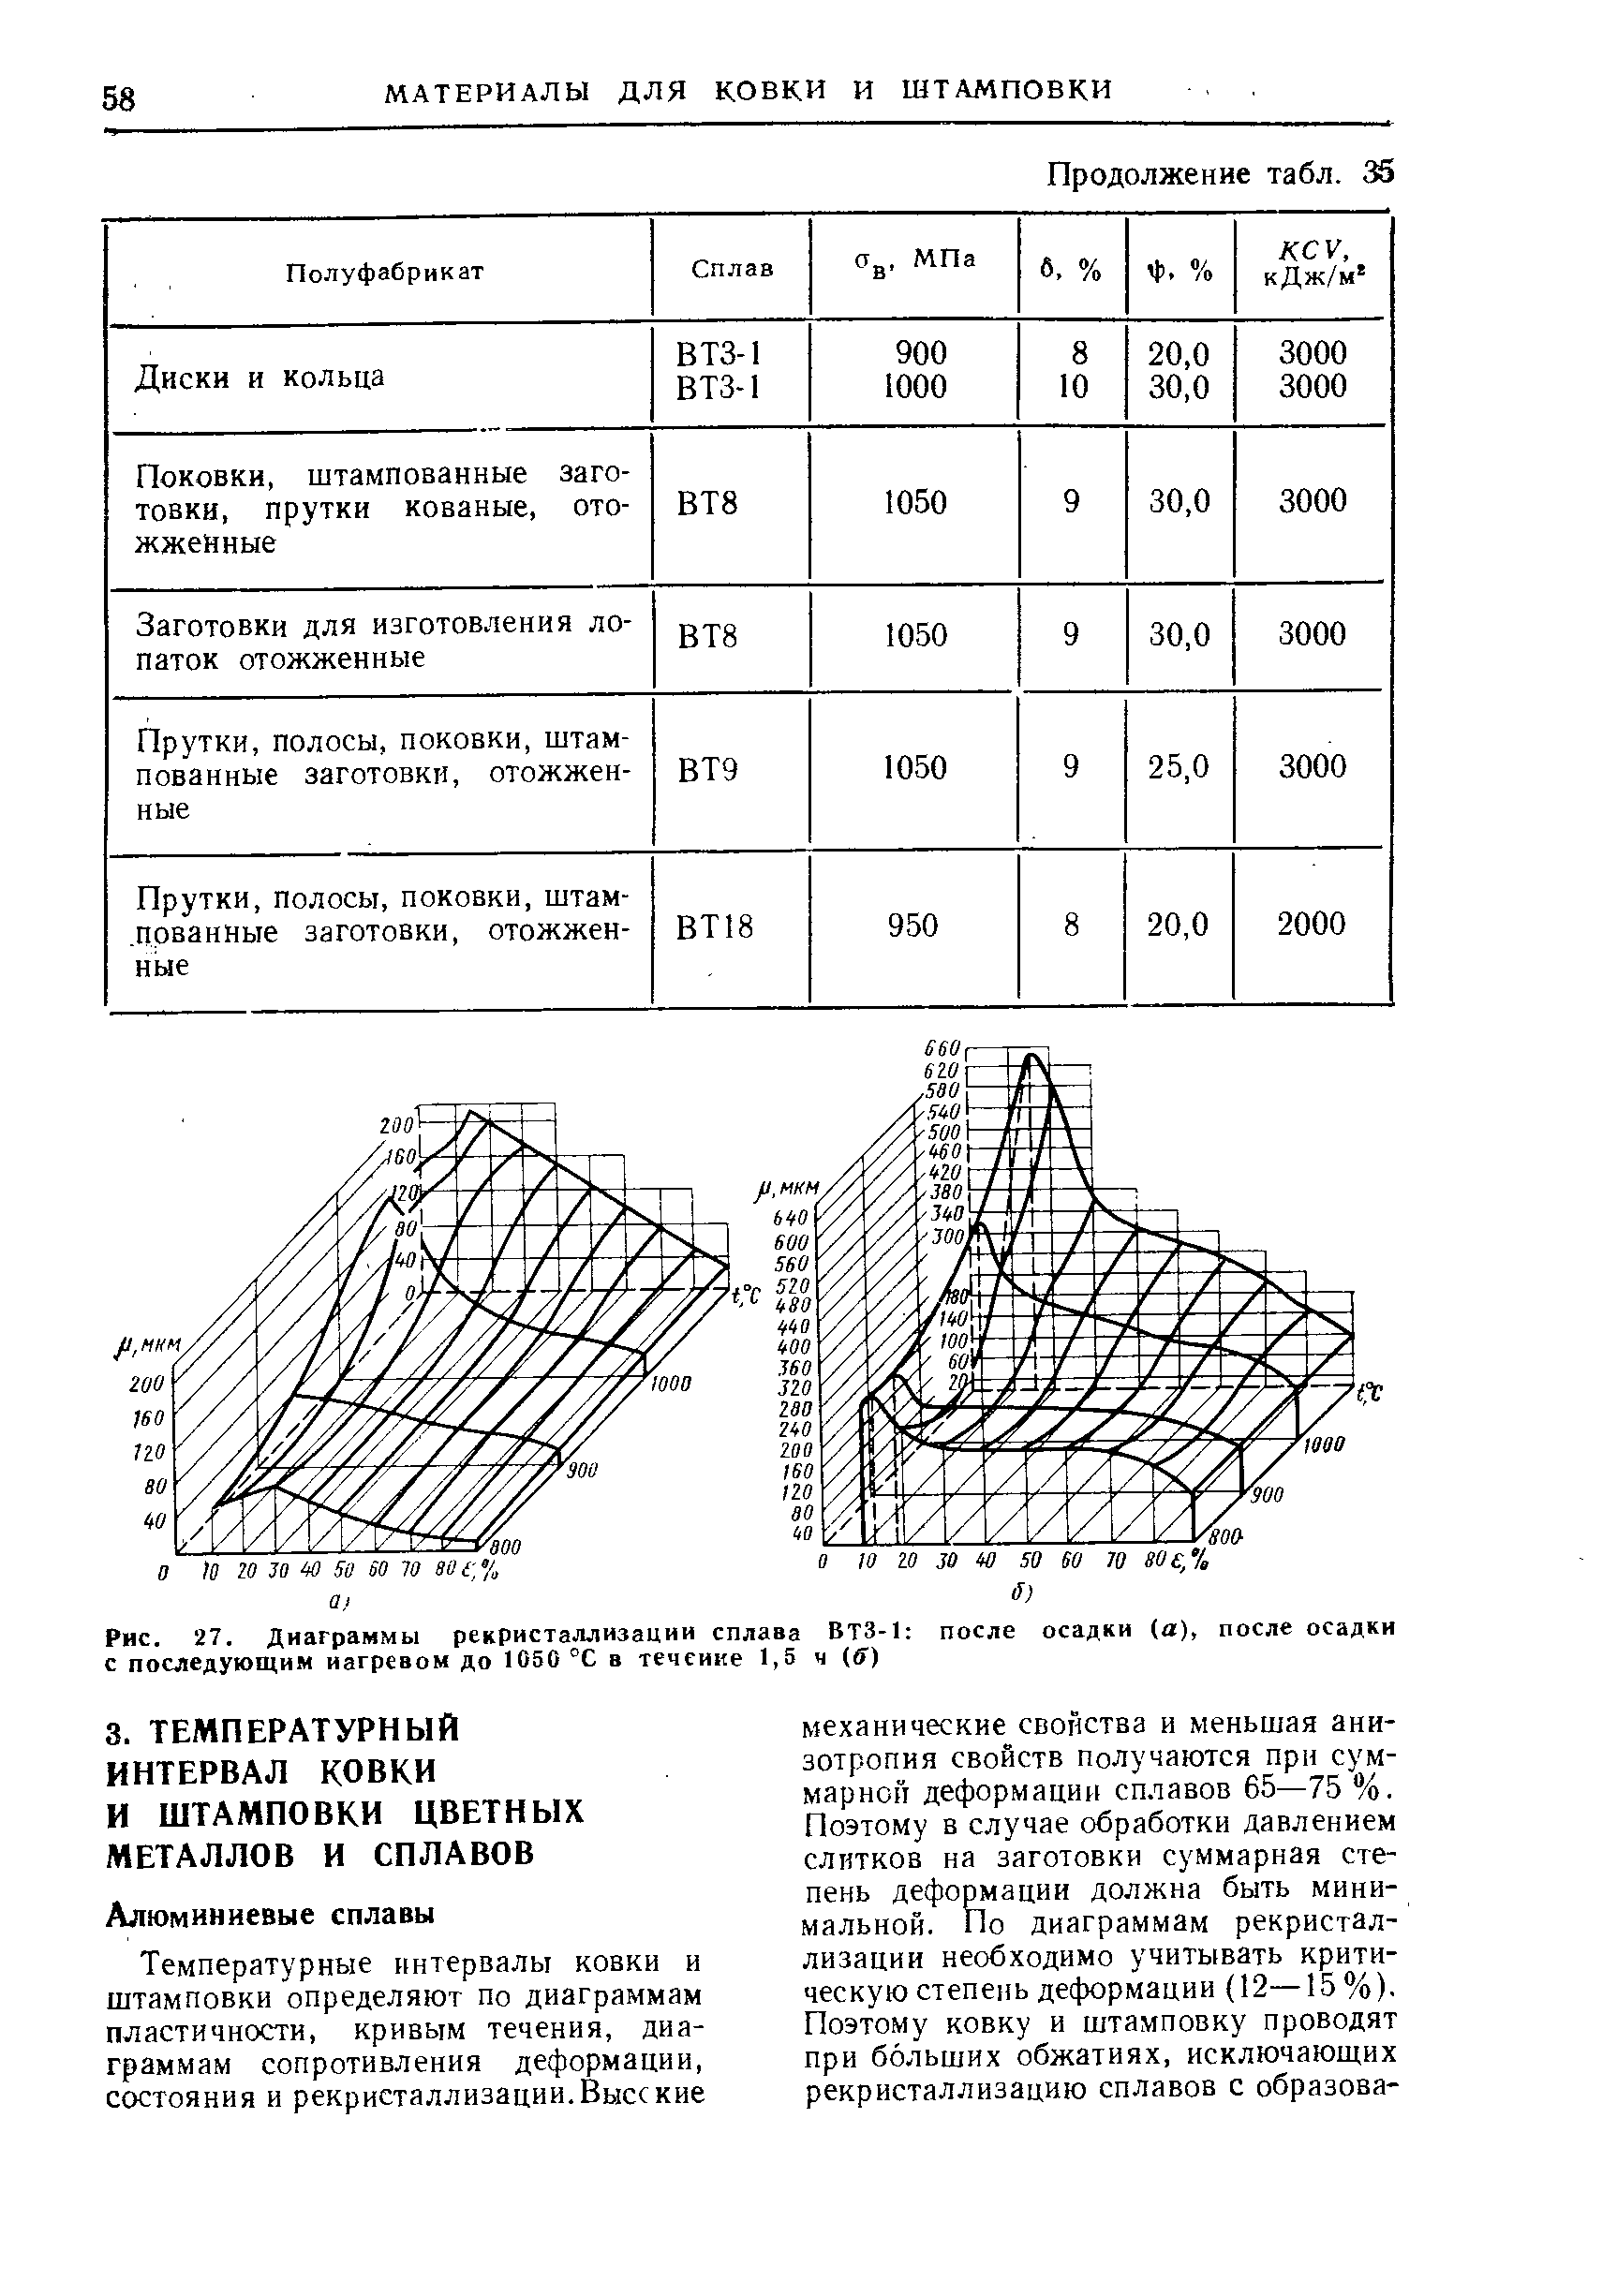 Рис. 27. Диаграммы рекристаллизации сплава ВТЗ-1 с последующим иагревом до 1050 °С в течение 1,5 ч (ff)
